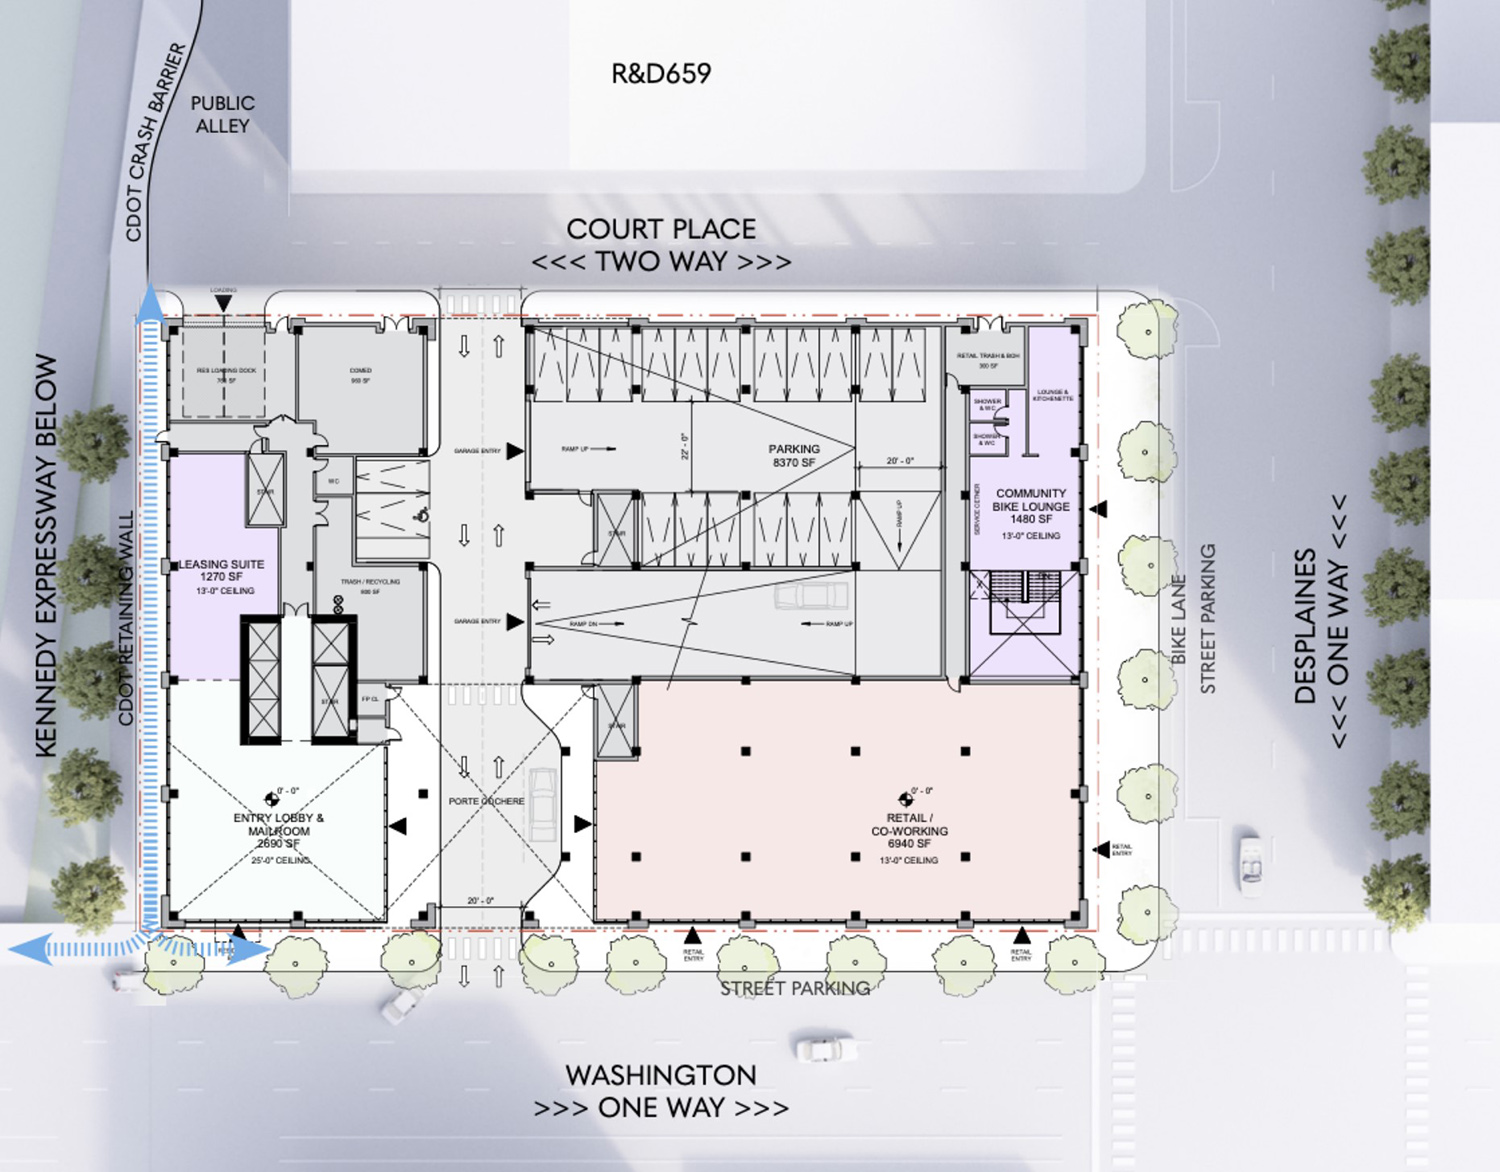 Ground Floor Plan for 640 W Washington Blvd. Drawing by Hartshorne Plunkard Architecture